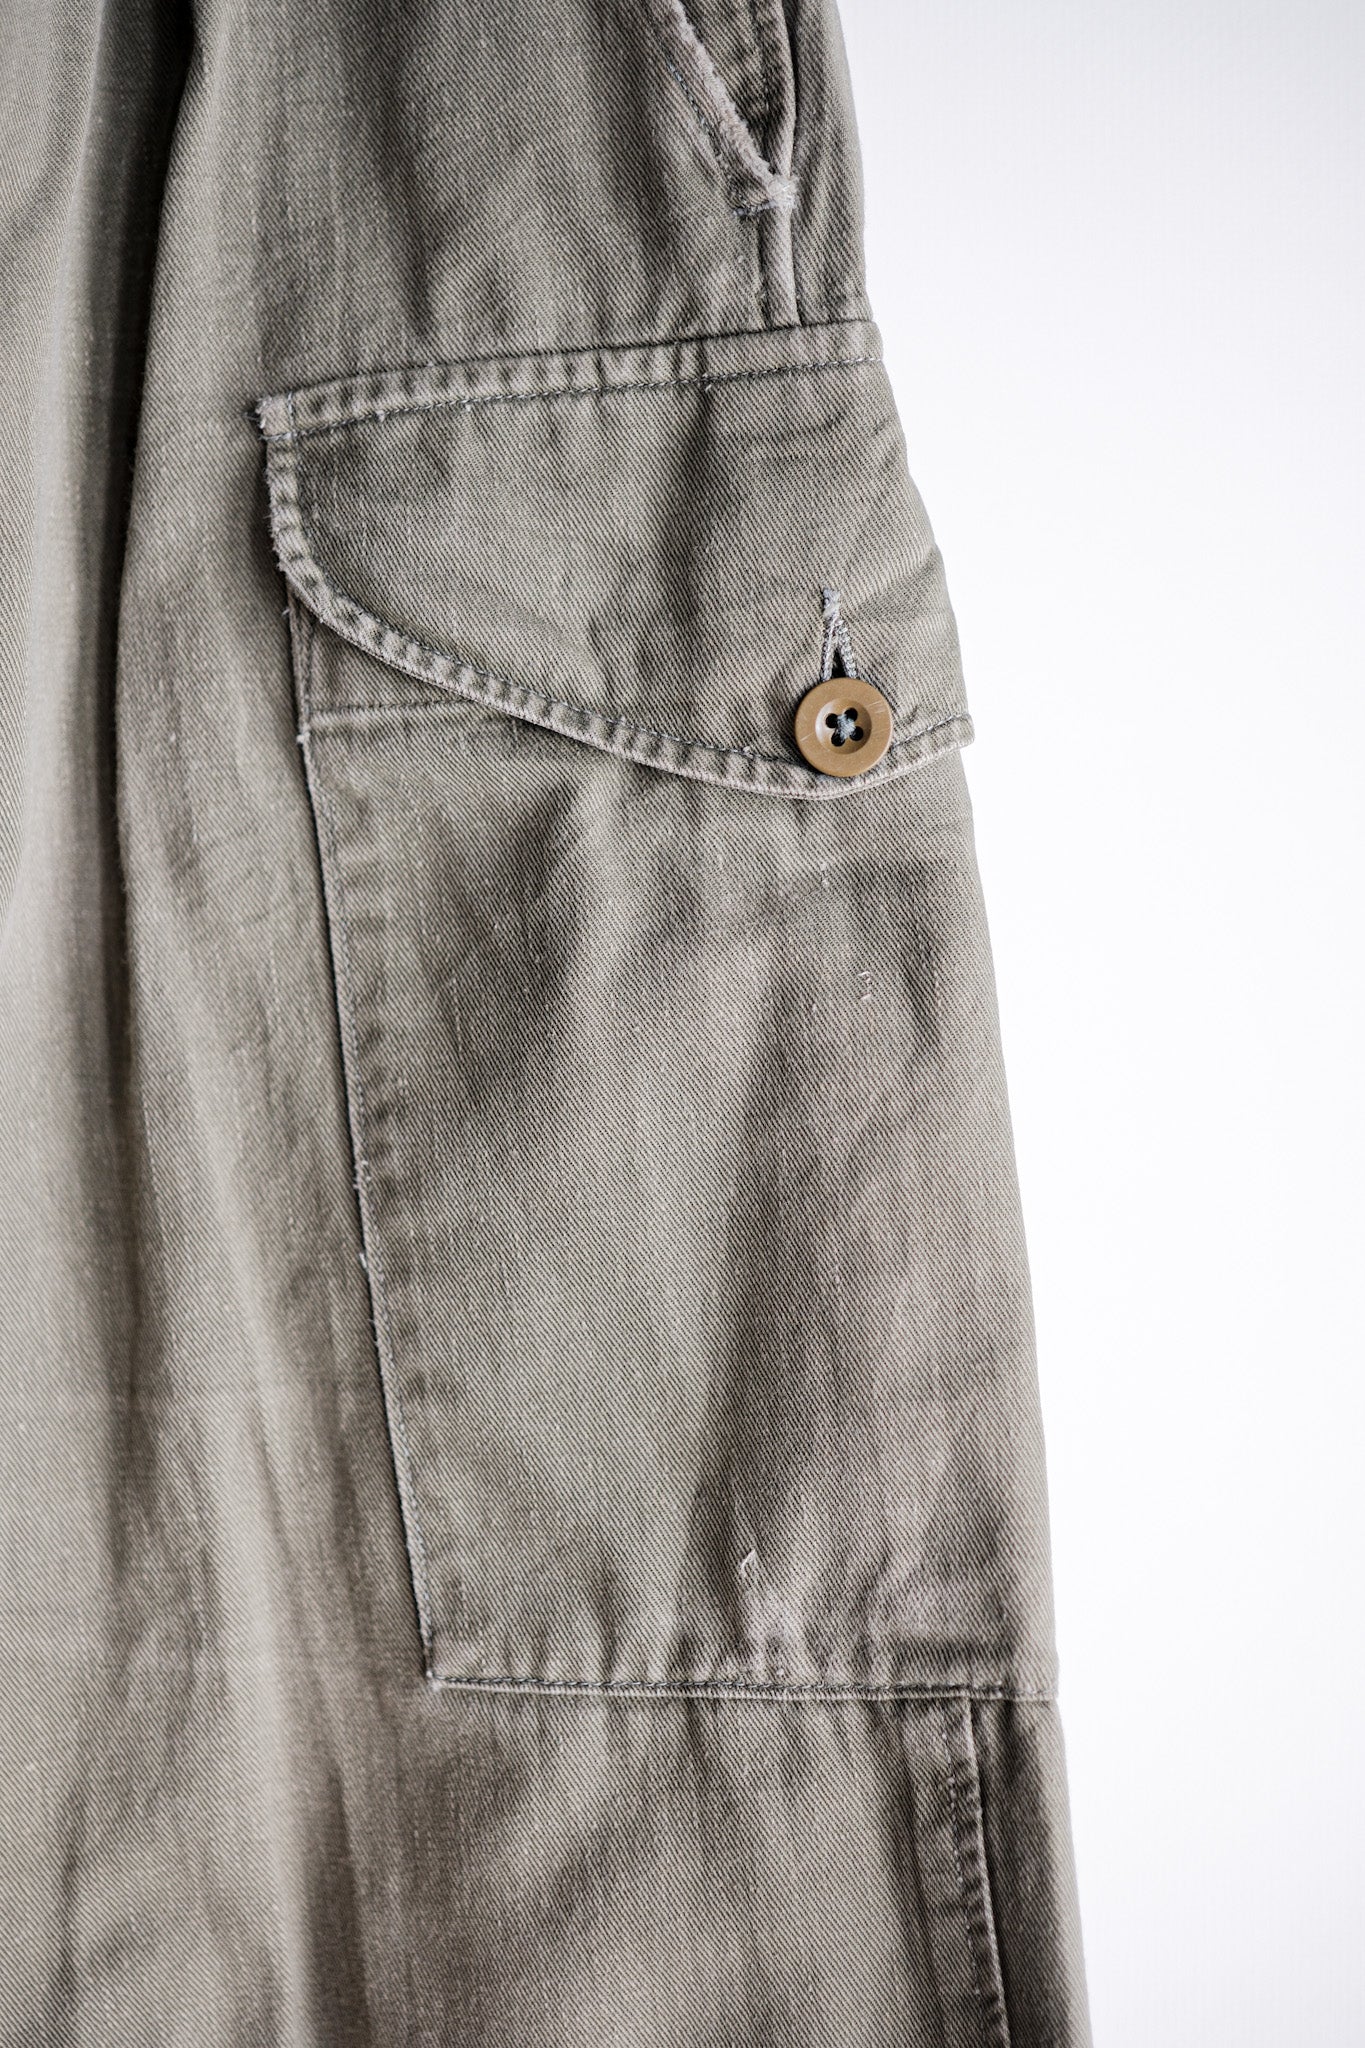 [〜60年代]英國軍隊1950年模式Gurkha褲子